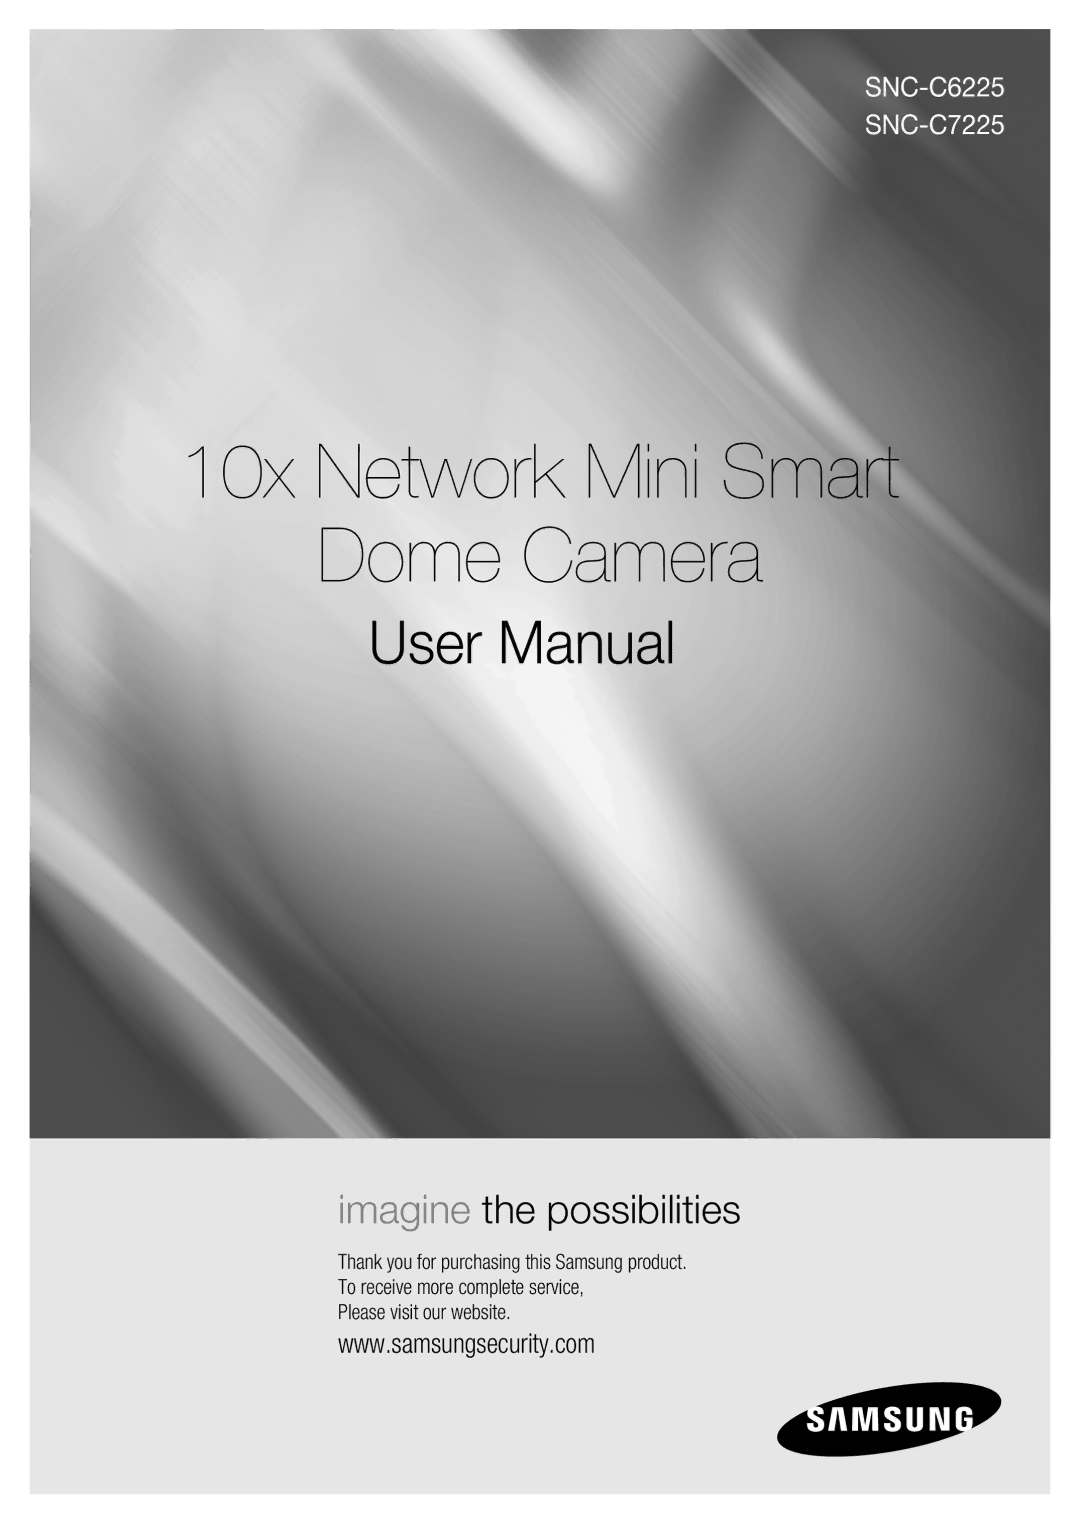 Samsung SNC-C6225, SNC-C7225 user manual 10x Network Mini Smart Dome Camera 